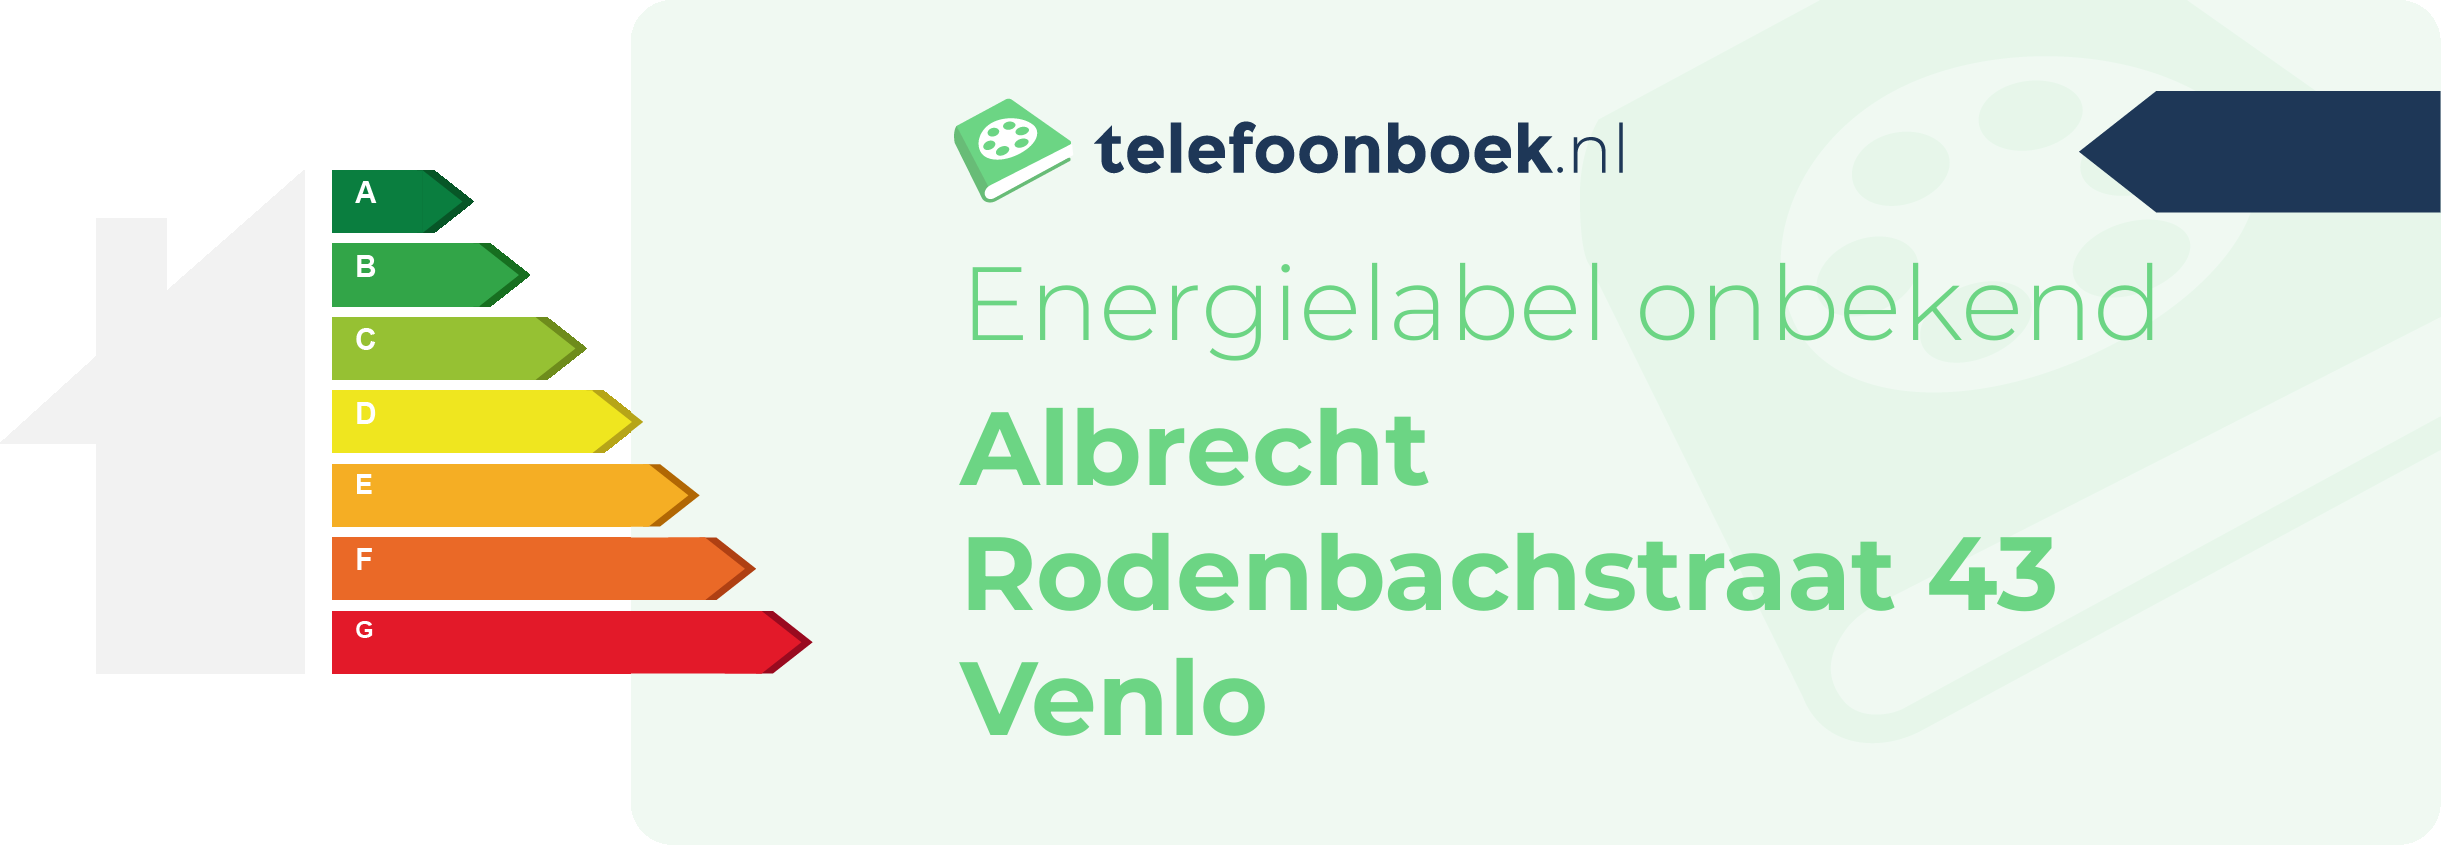 Energielabel Albrecht Rodenbachstraat 43 Venlo